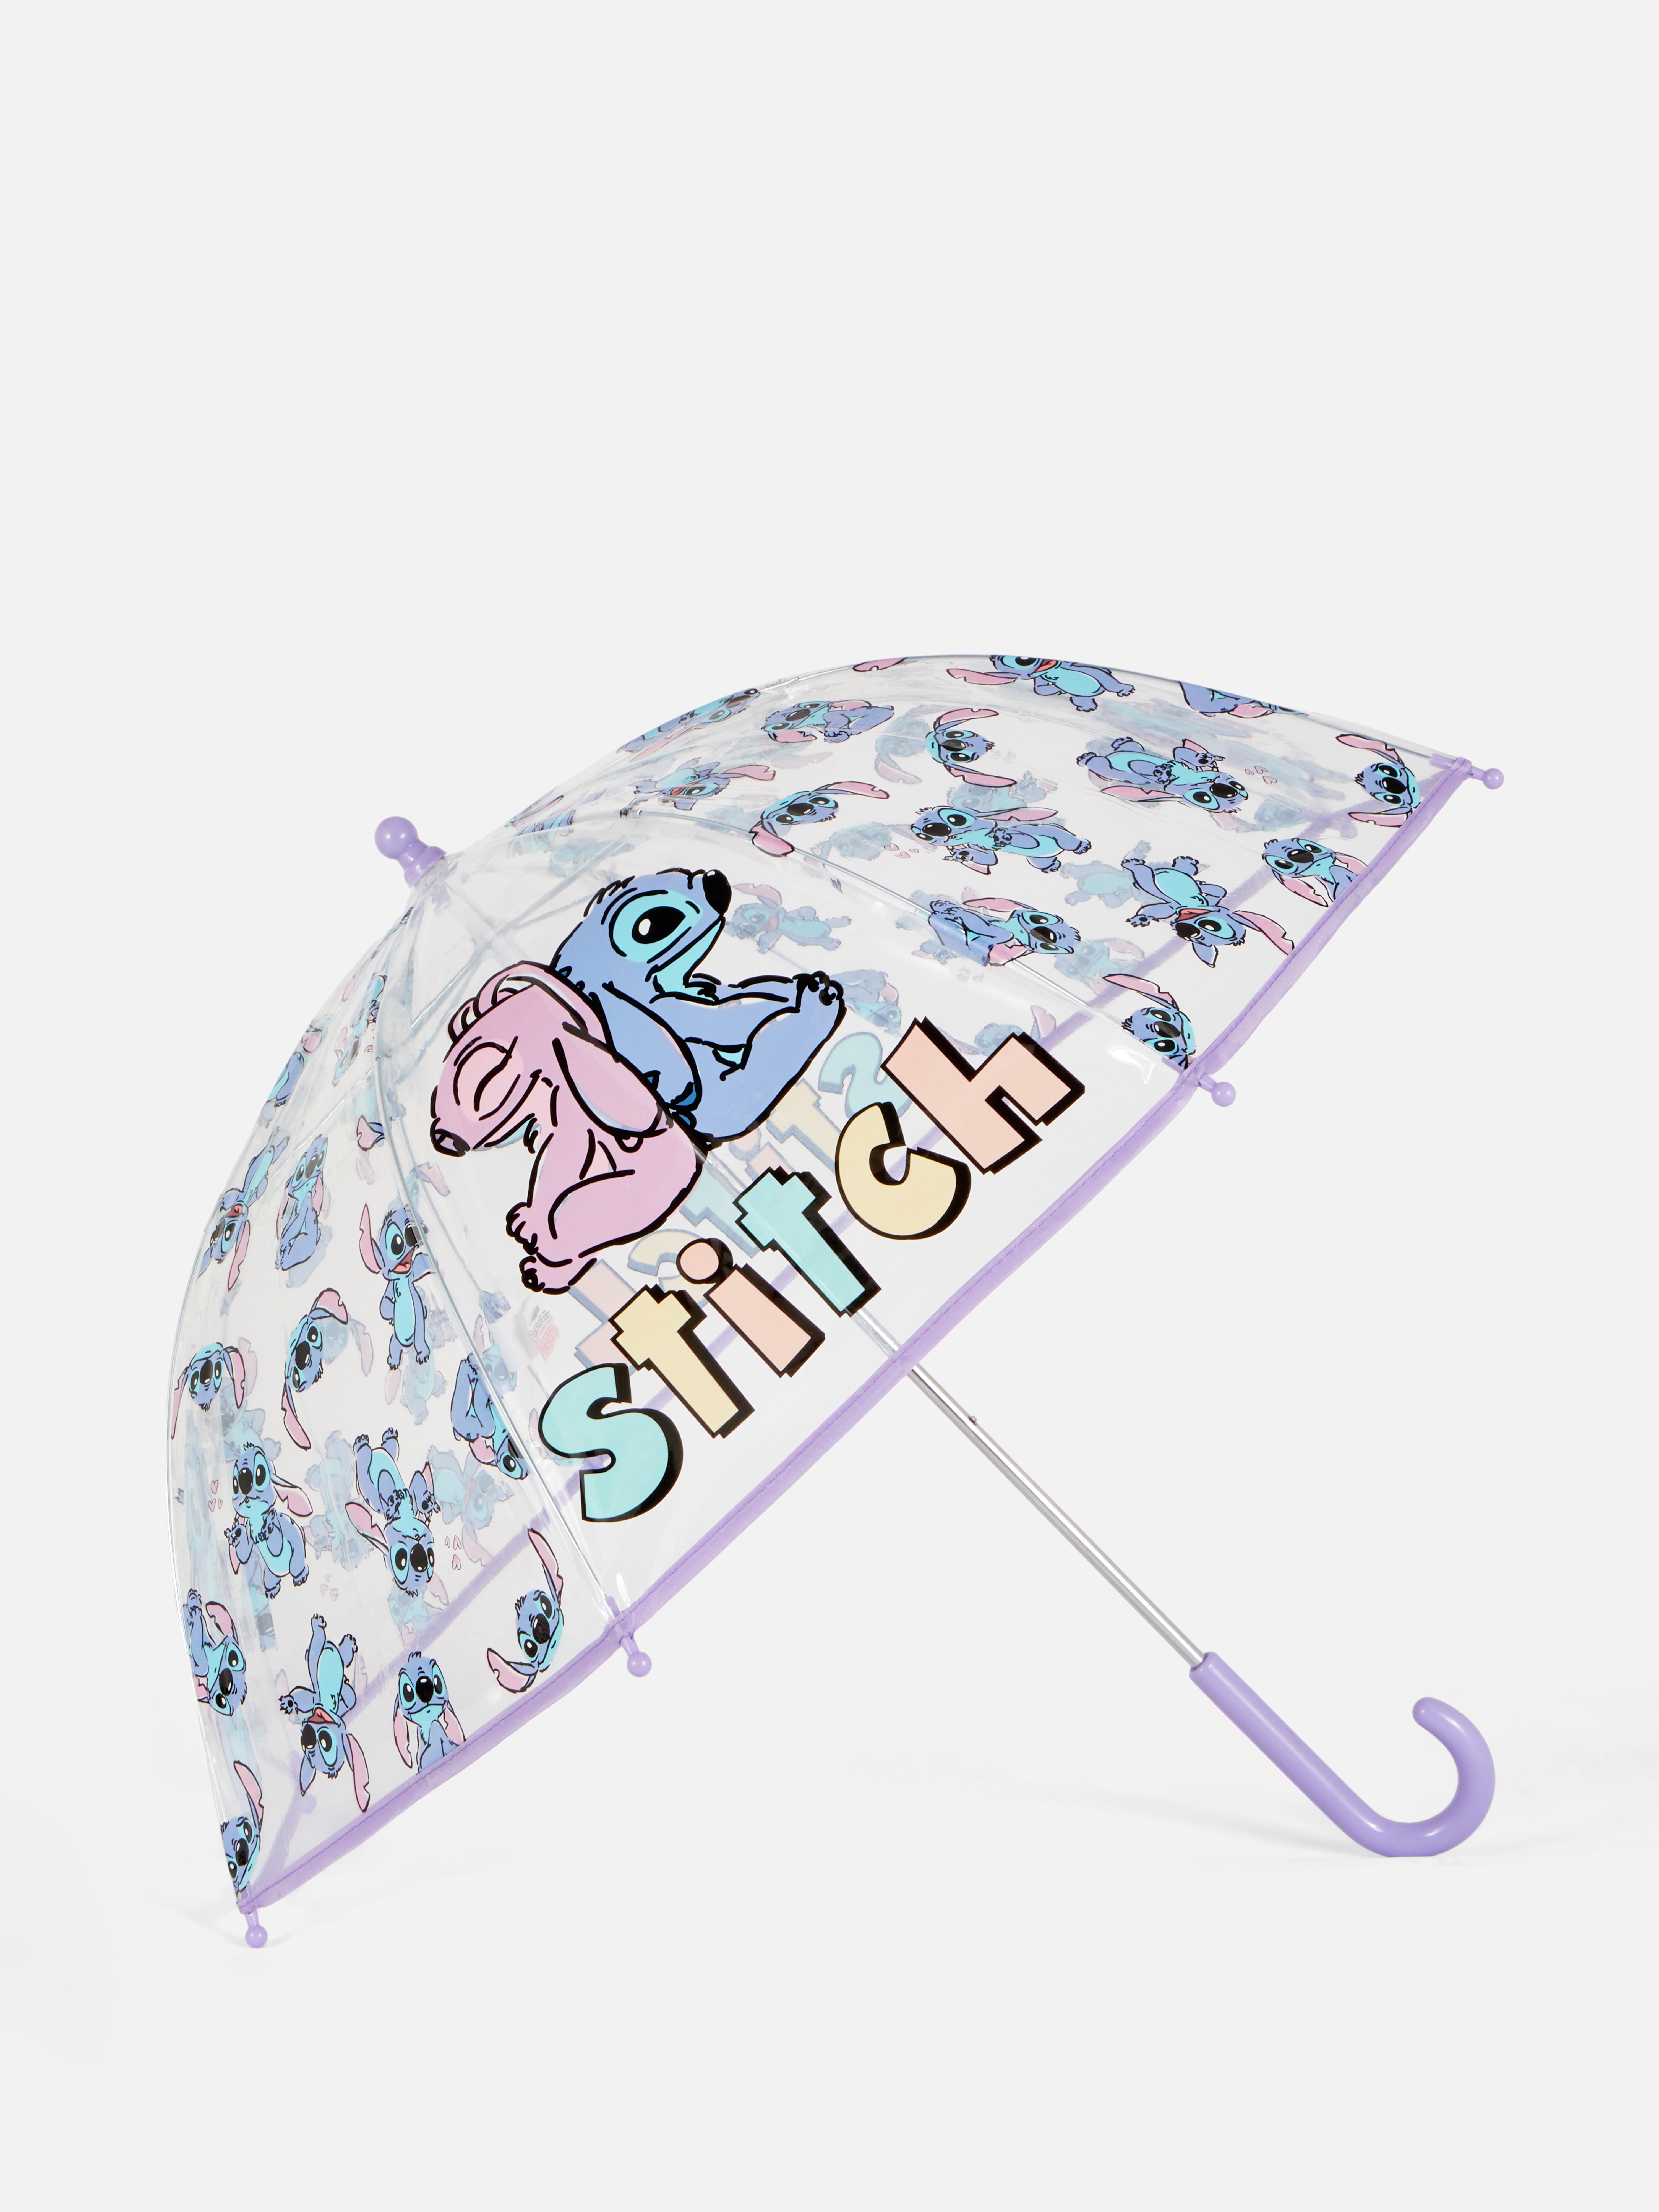 Disney's Lilo and Stitch Umbrella